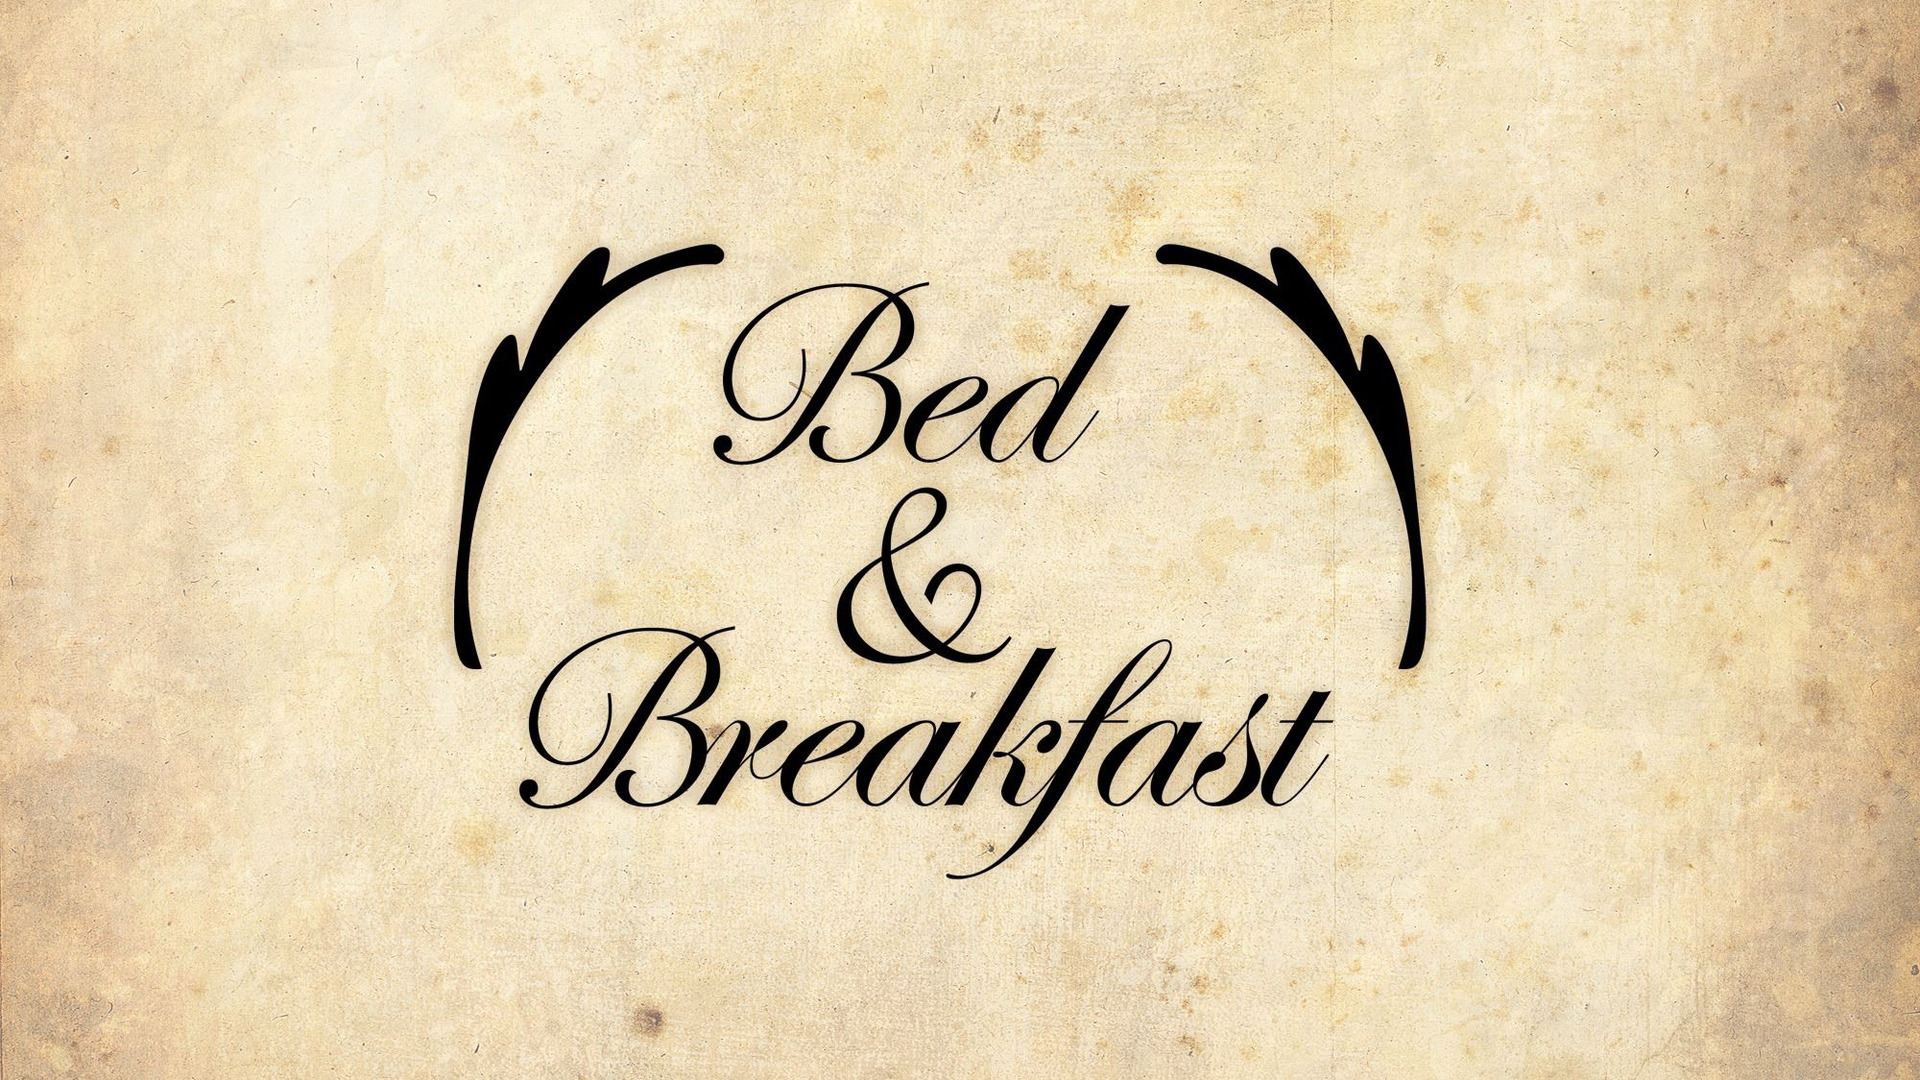 Show Bed & Breakfast